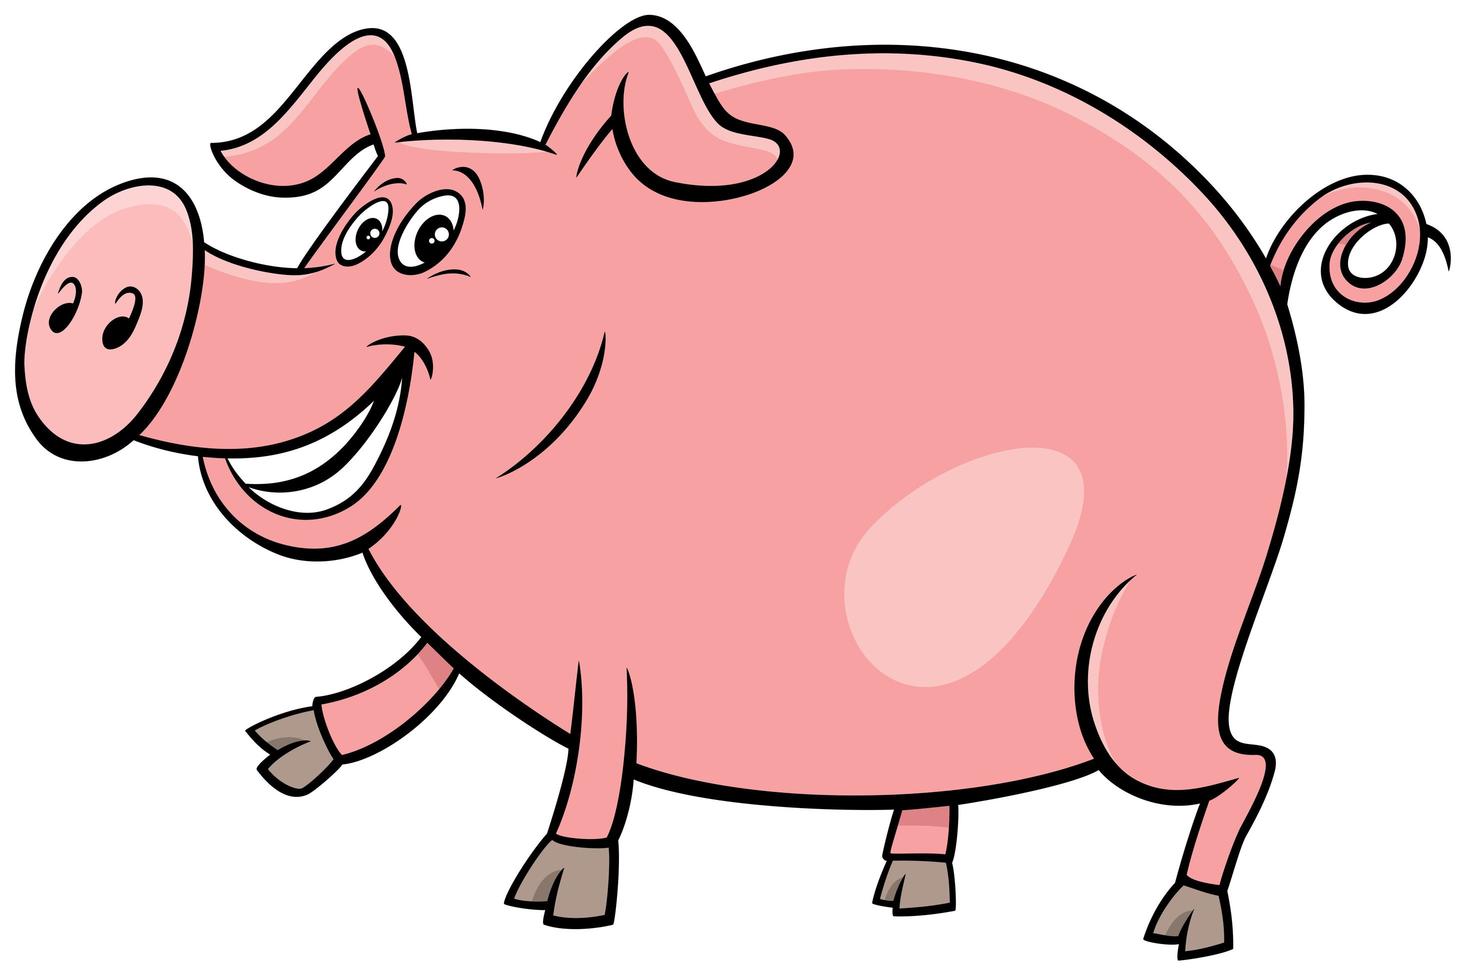 Karikaturillustration des glücklichen Nutztiercharakters des Schweins vektor